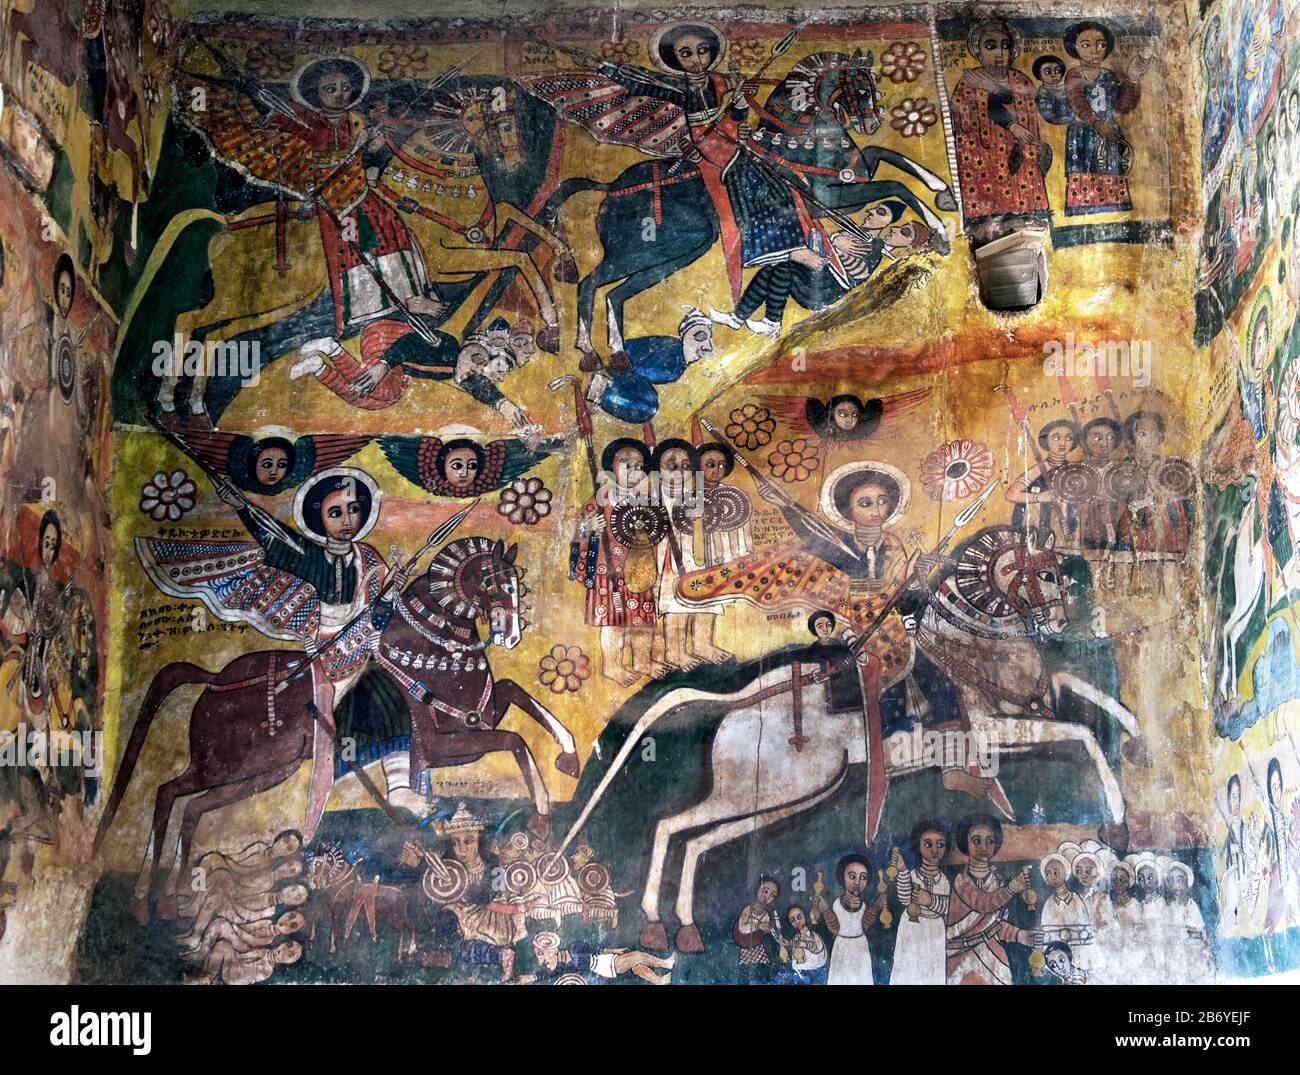 Fresque dans l'église Abreha wa Atsbaha, région de Gheralta, Tigray, Ethiopie Banque D'Images